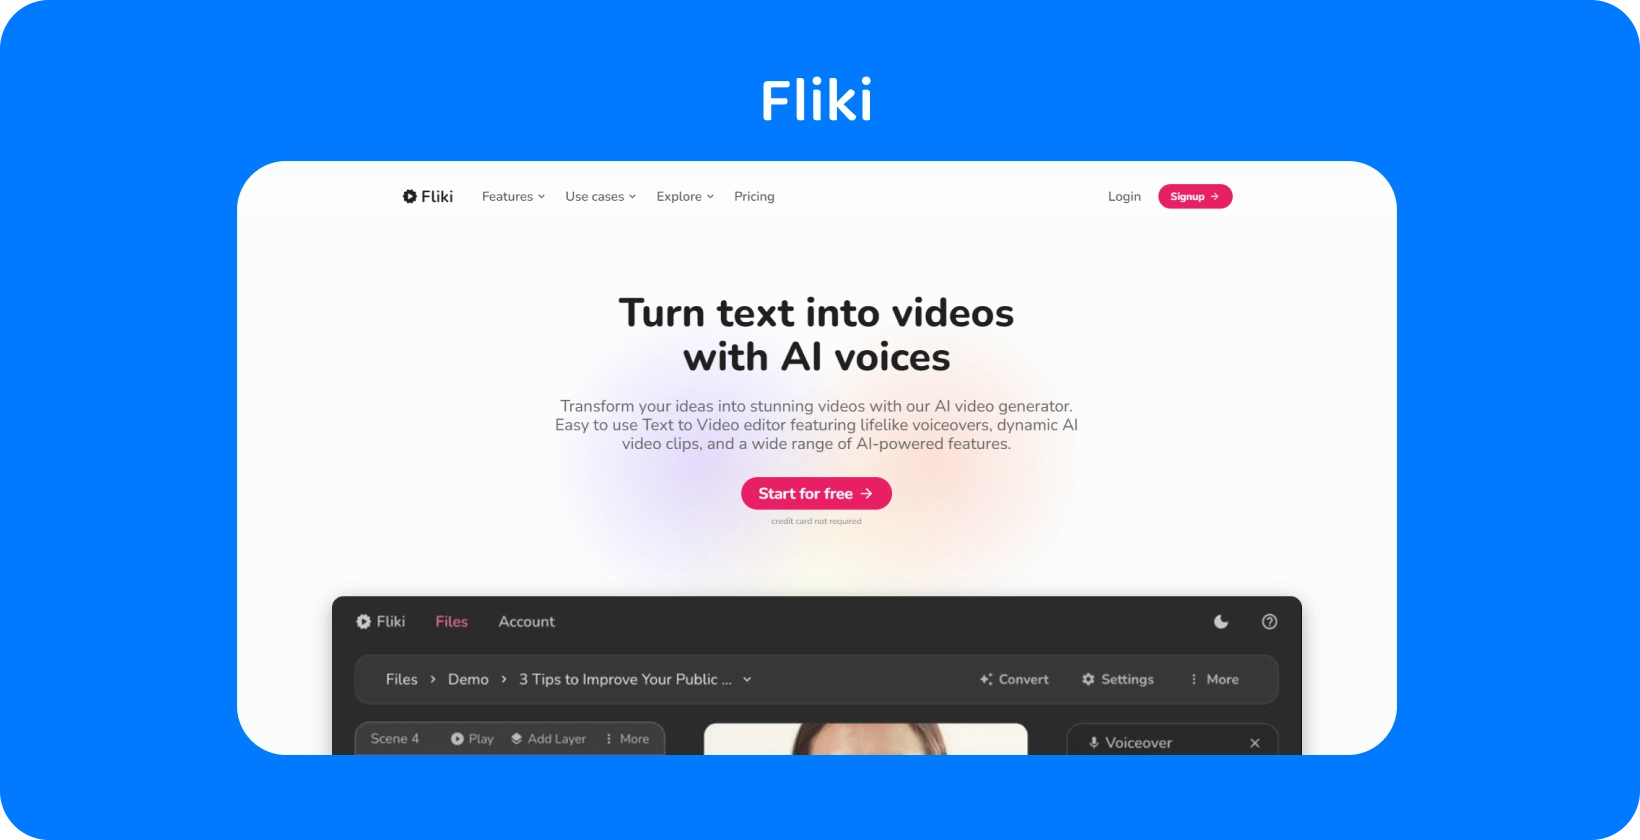 Stranica platforme Fliki pokazuje kako pretvoriti tekst u videozapise s AI glasovima, nudeći iskustvo uređivanja teksta u videozapis.